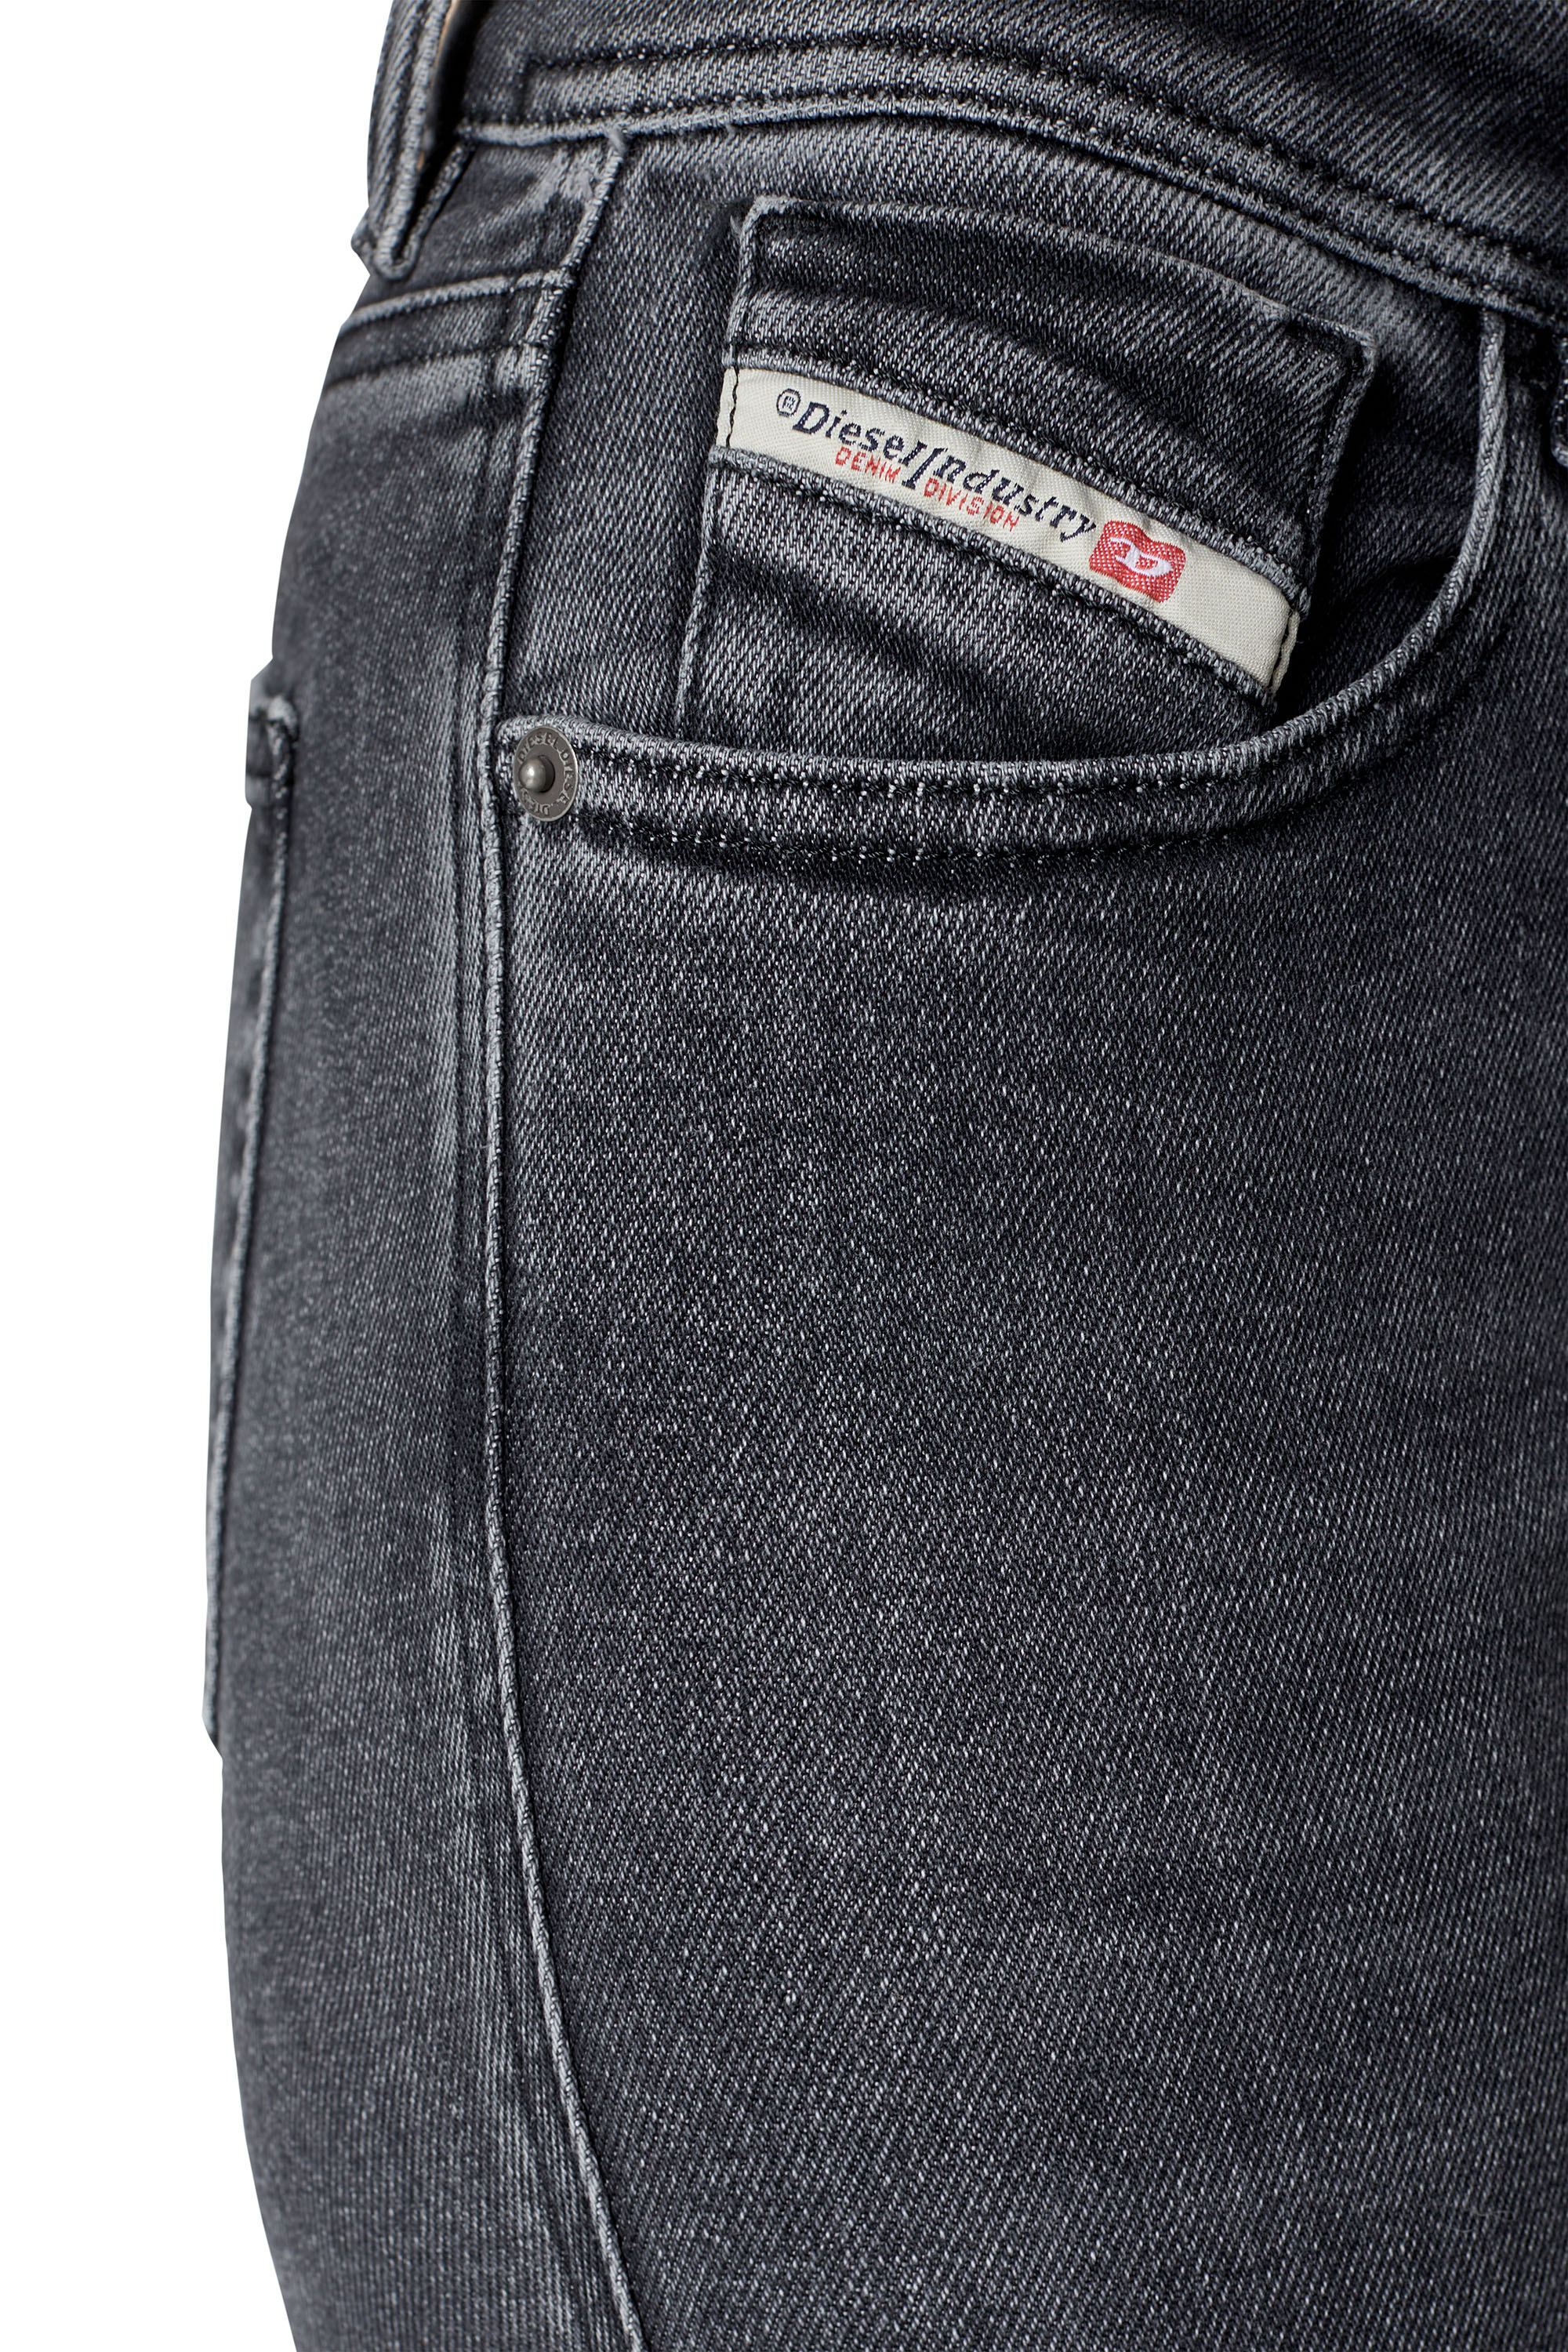 Diesel - Super skinny Jeans 2017 Slandy 09D61, Black/Dark grey - Image 4